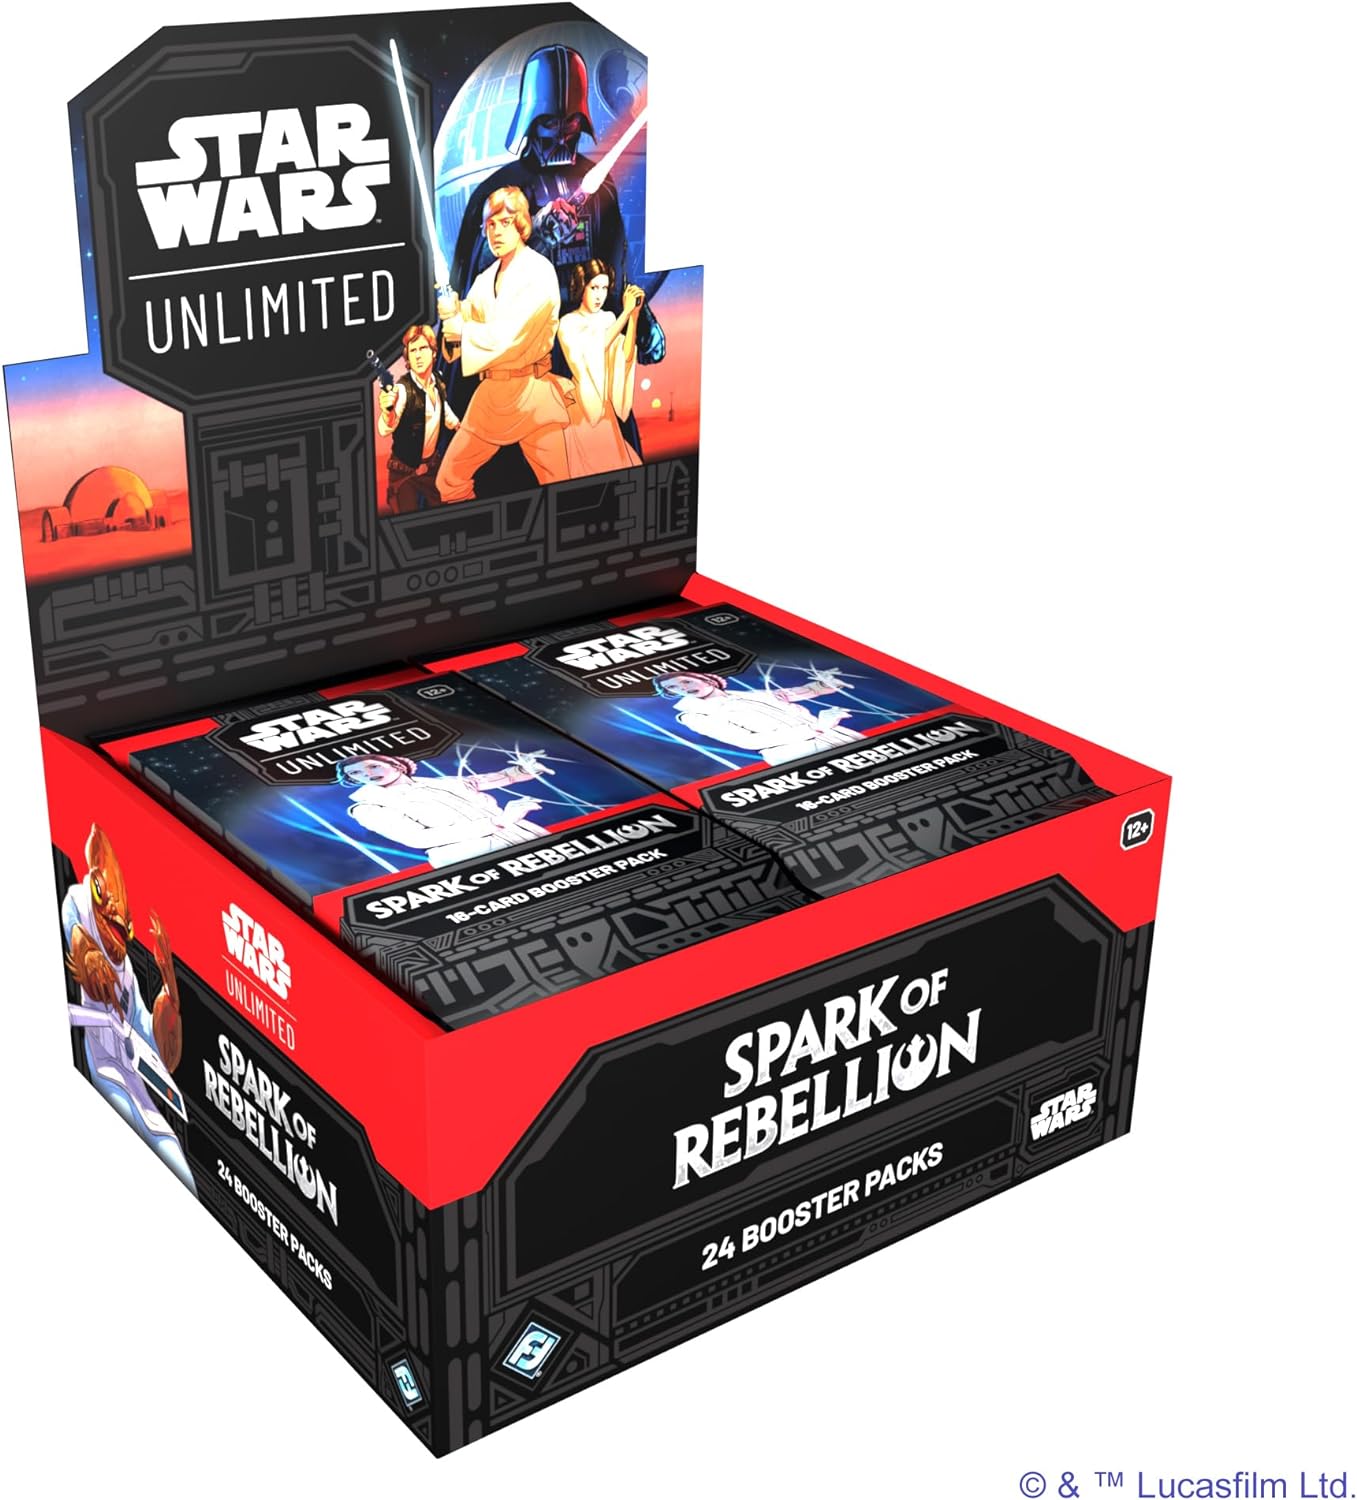 Star Wars: Unlimited Spark Of Rebellion – Booster Packs – Inglés